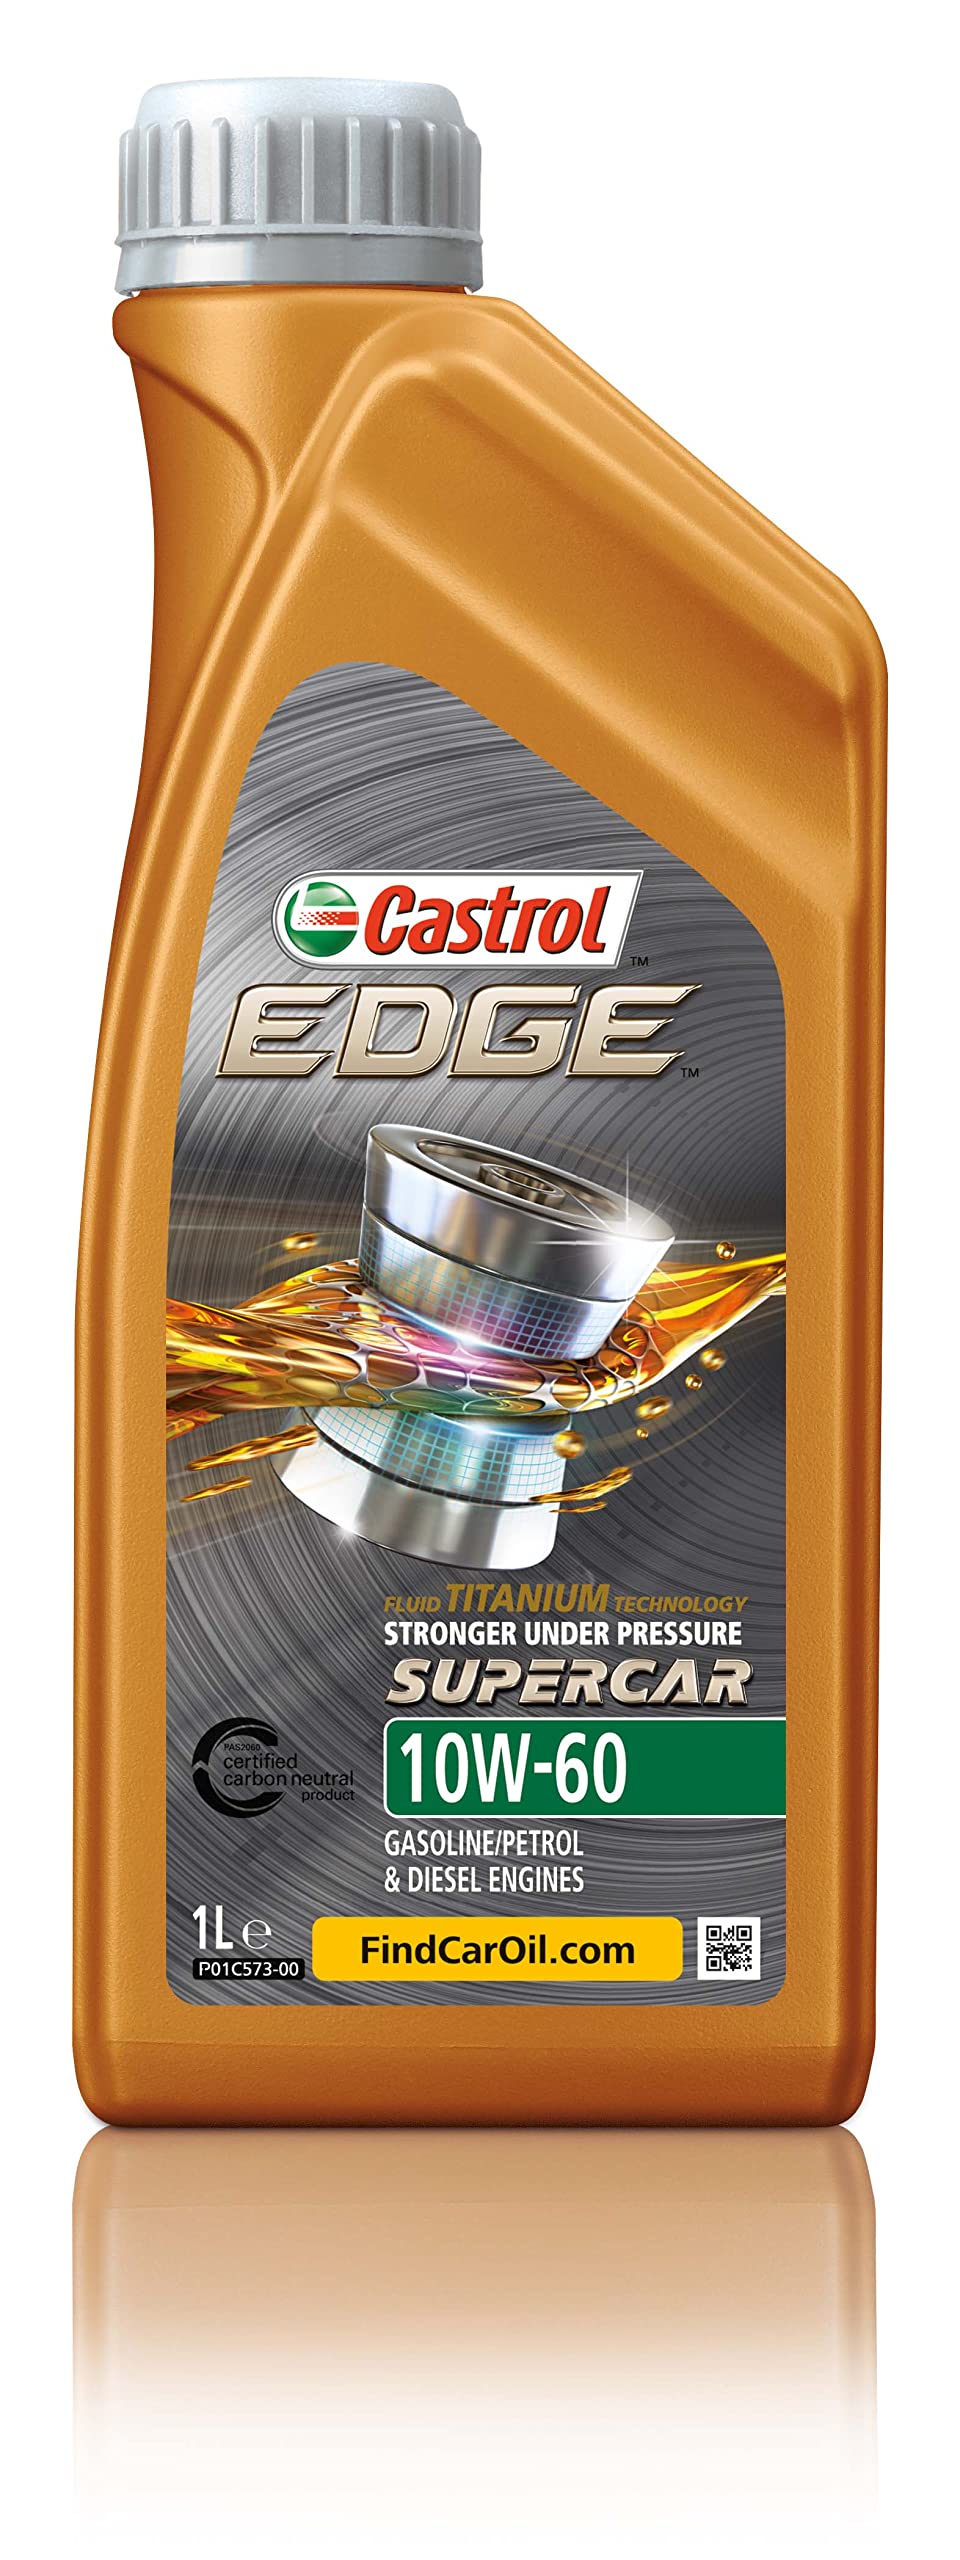 Castrol EDGE SUPERCAR 10W-60, 1 Liter von Castrol